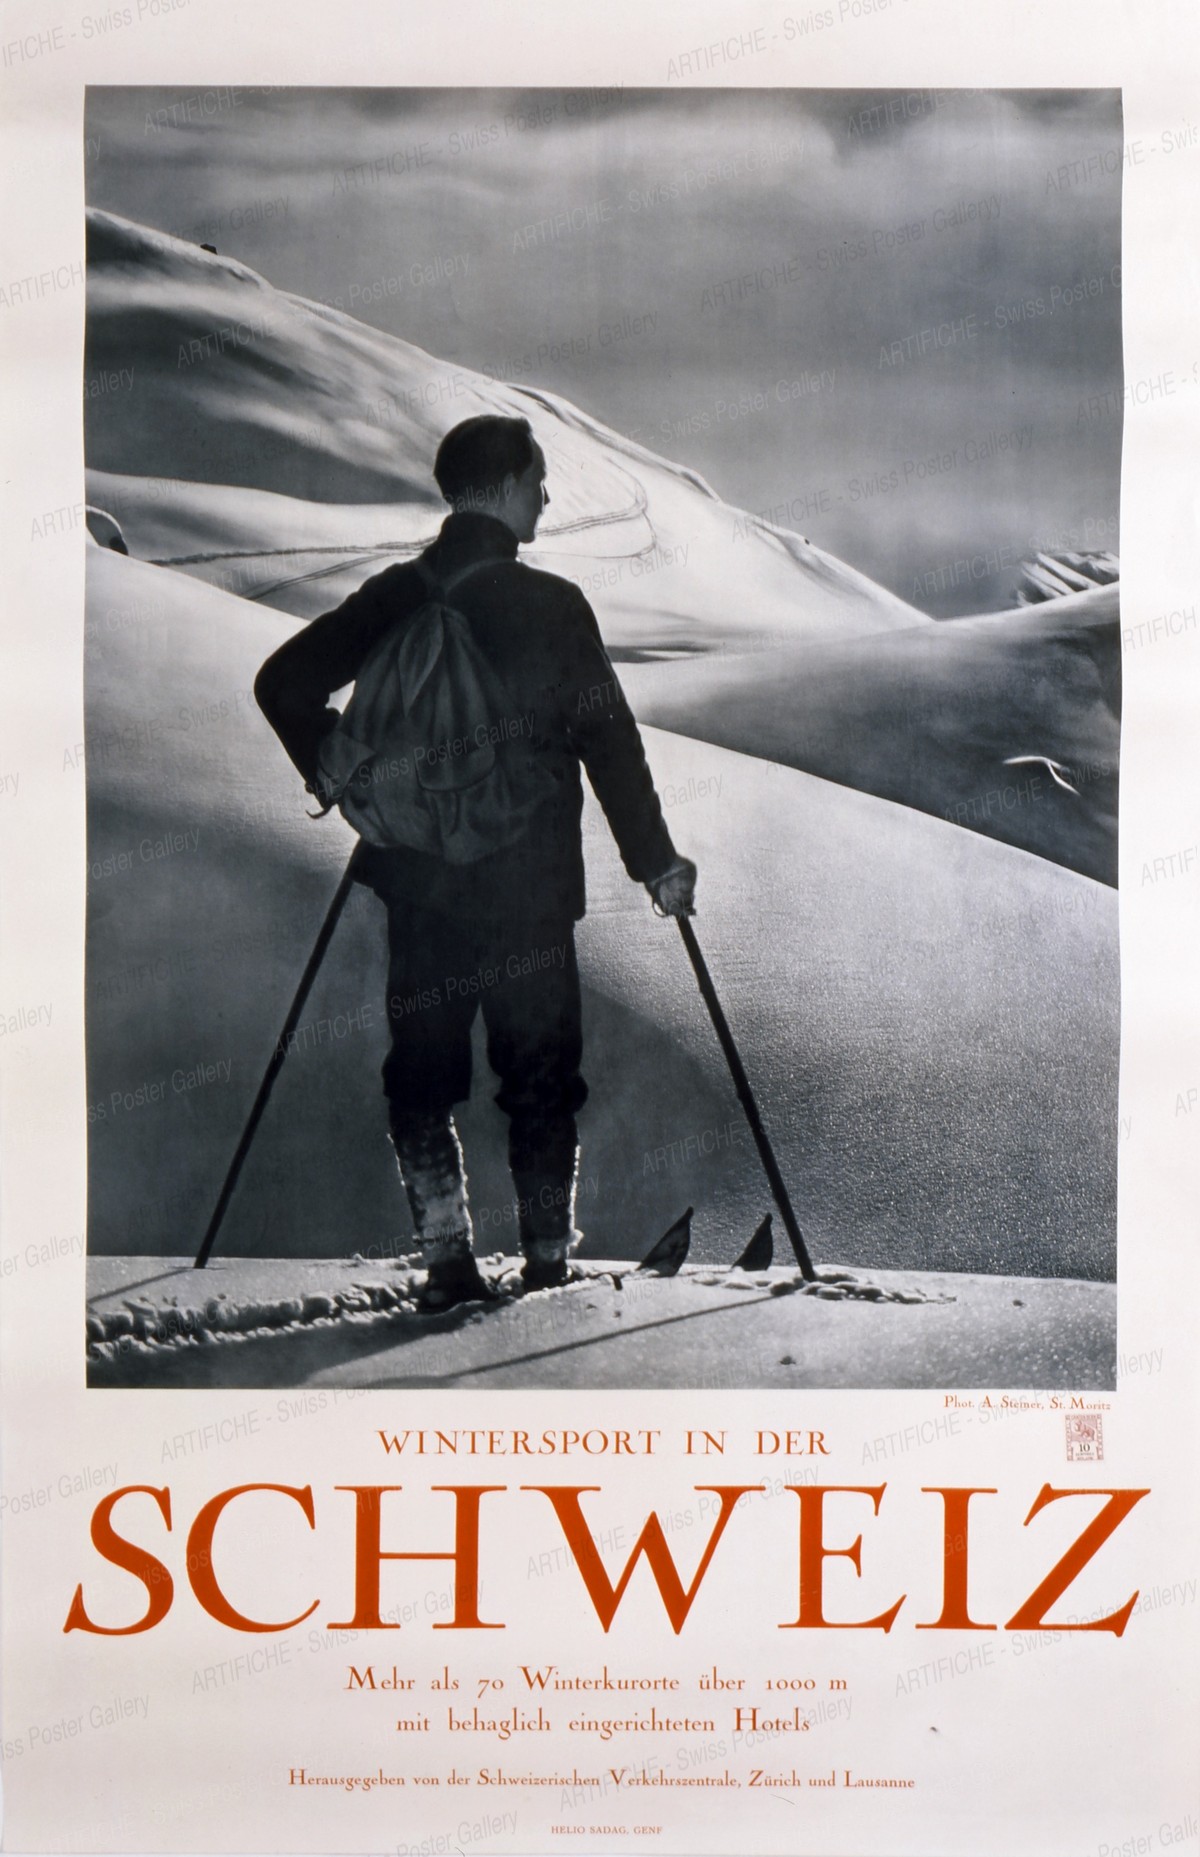 Wintersport in der Schweiz, Albert Steiner